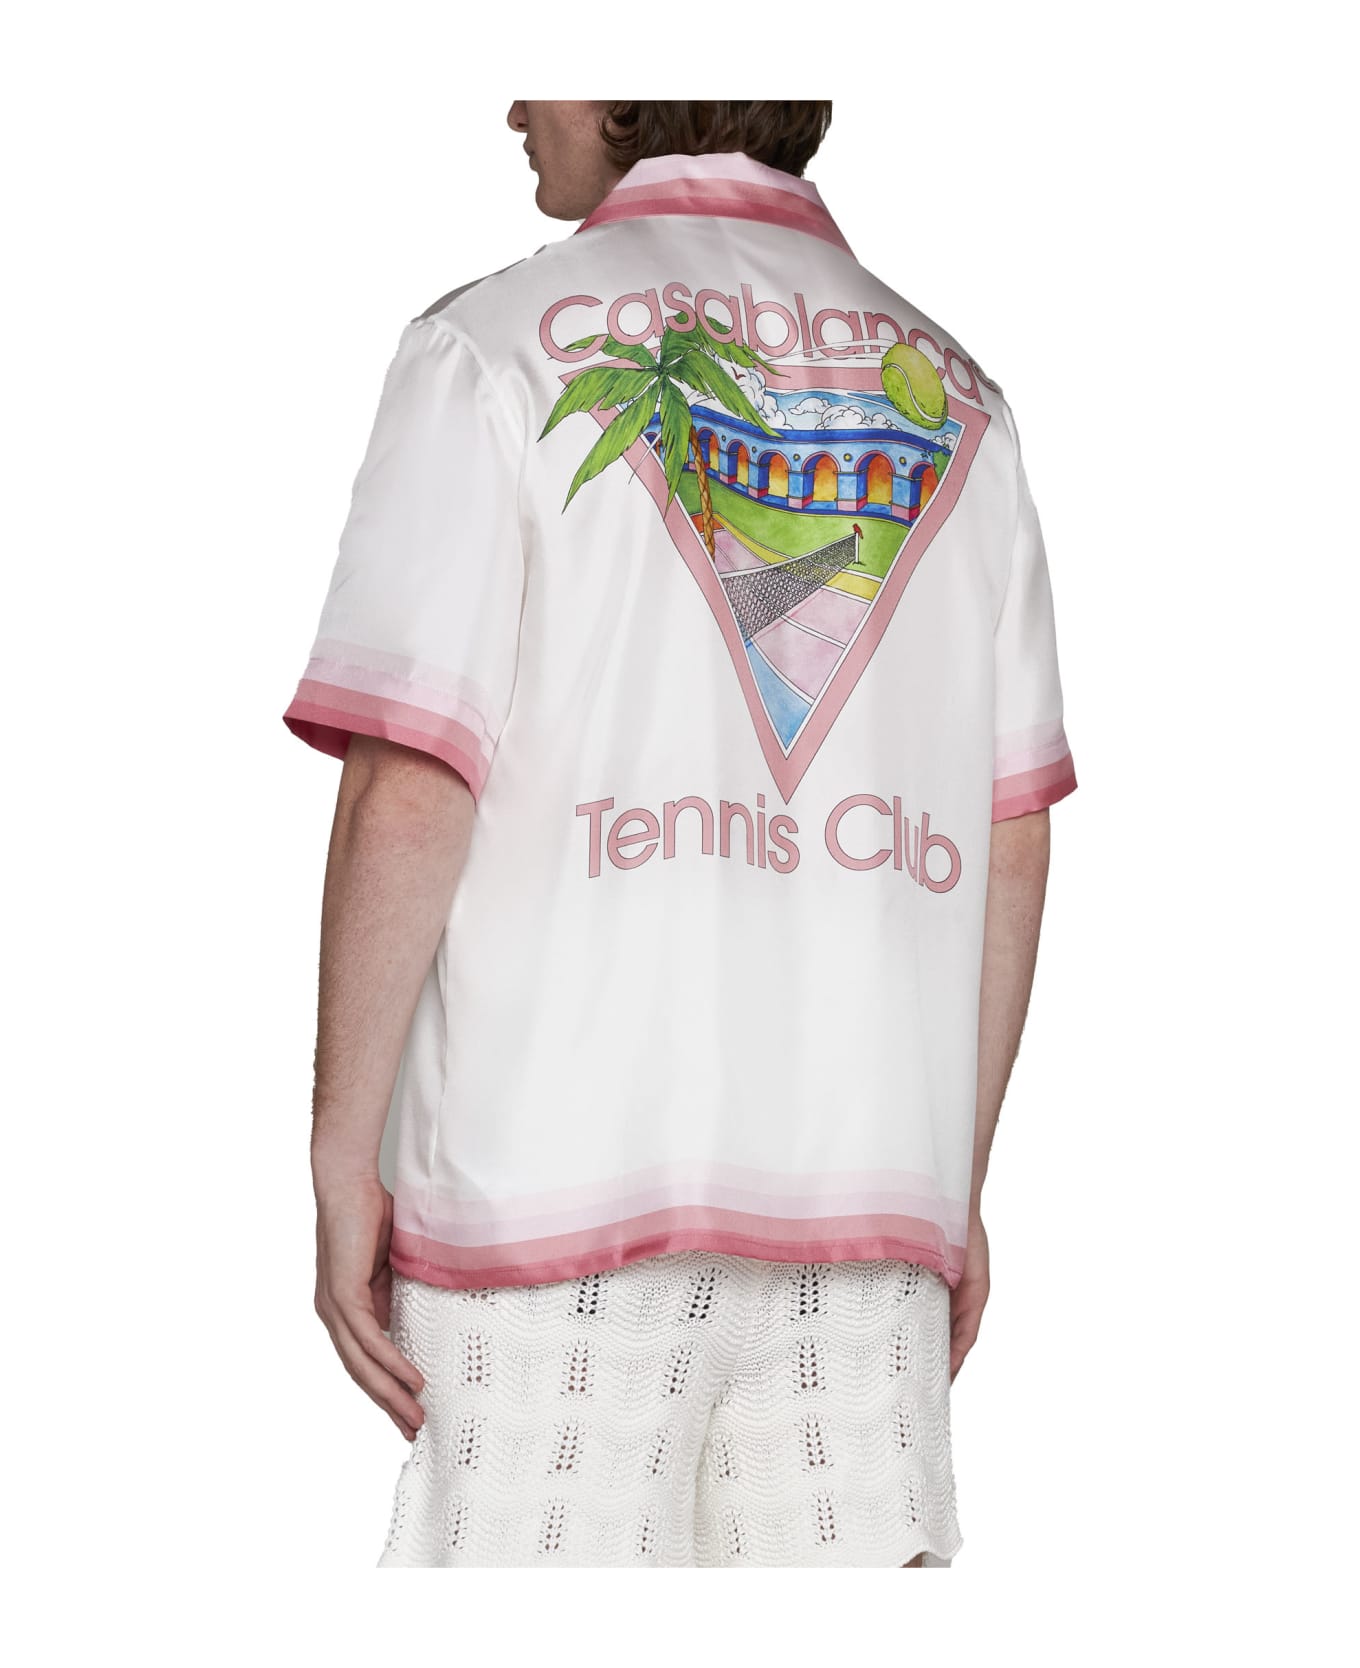 Casablanca Shirt - Tennisclubicon